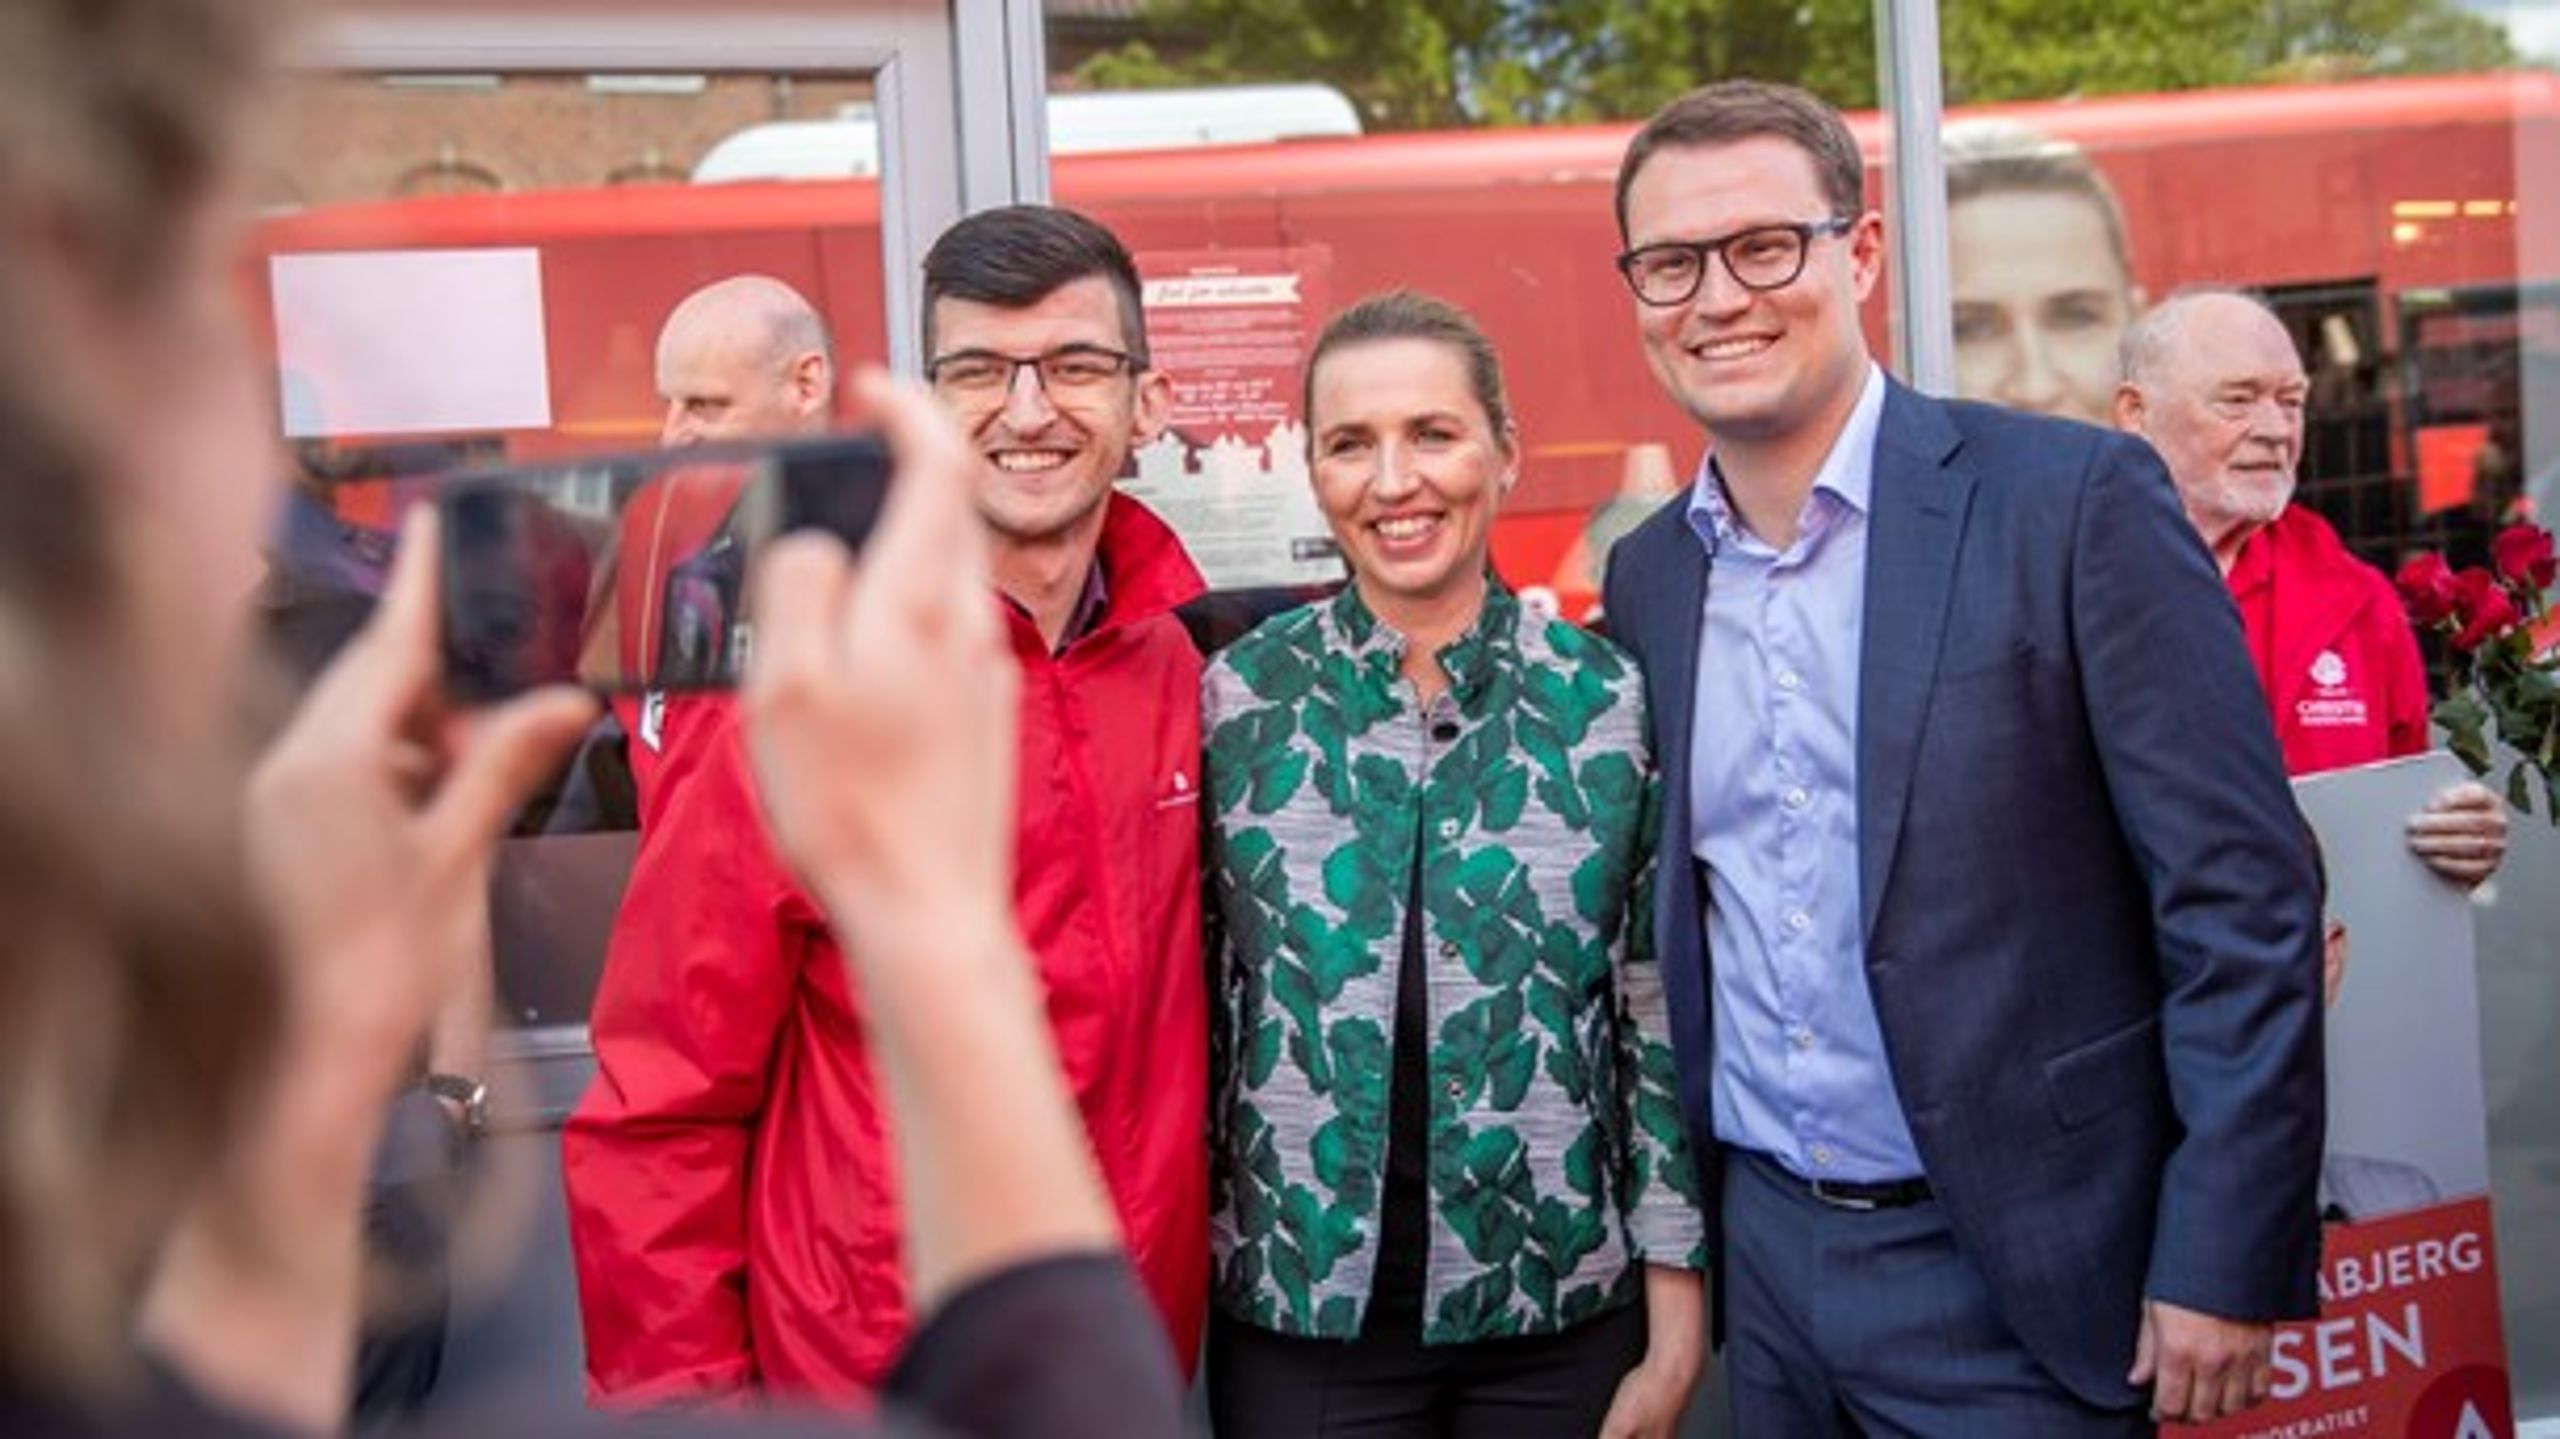 Socialdemokratiets Christian Rabjerg Madsen (til højre) ser ud til at blive genvalgt til Folketinget. (Foto: Frank Cilius/Ritzau Scanpix).<br>